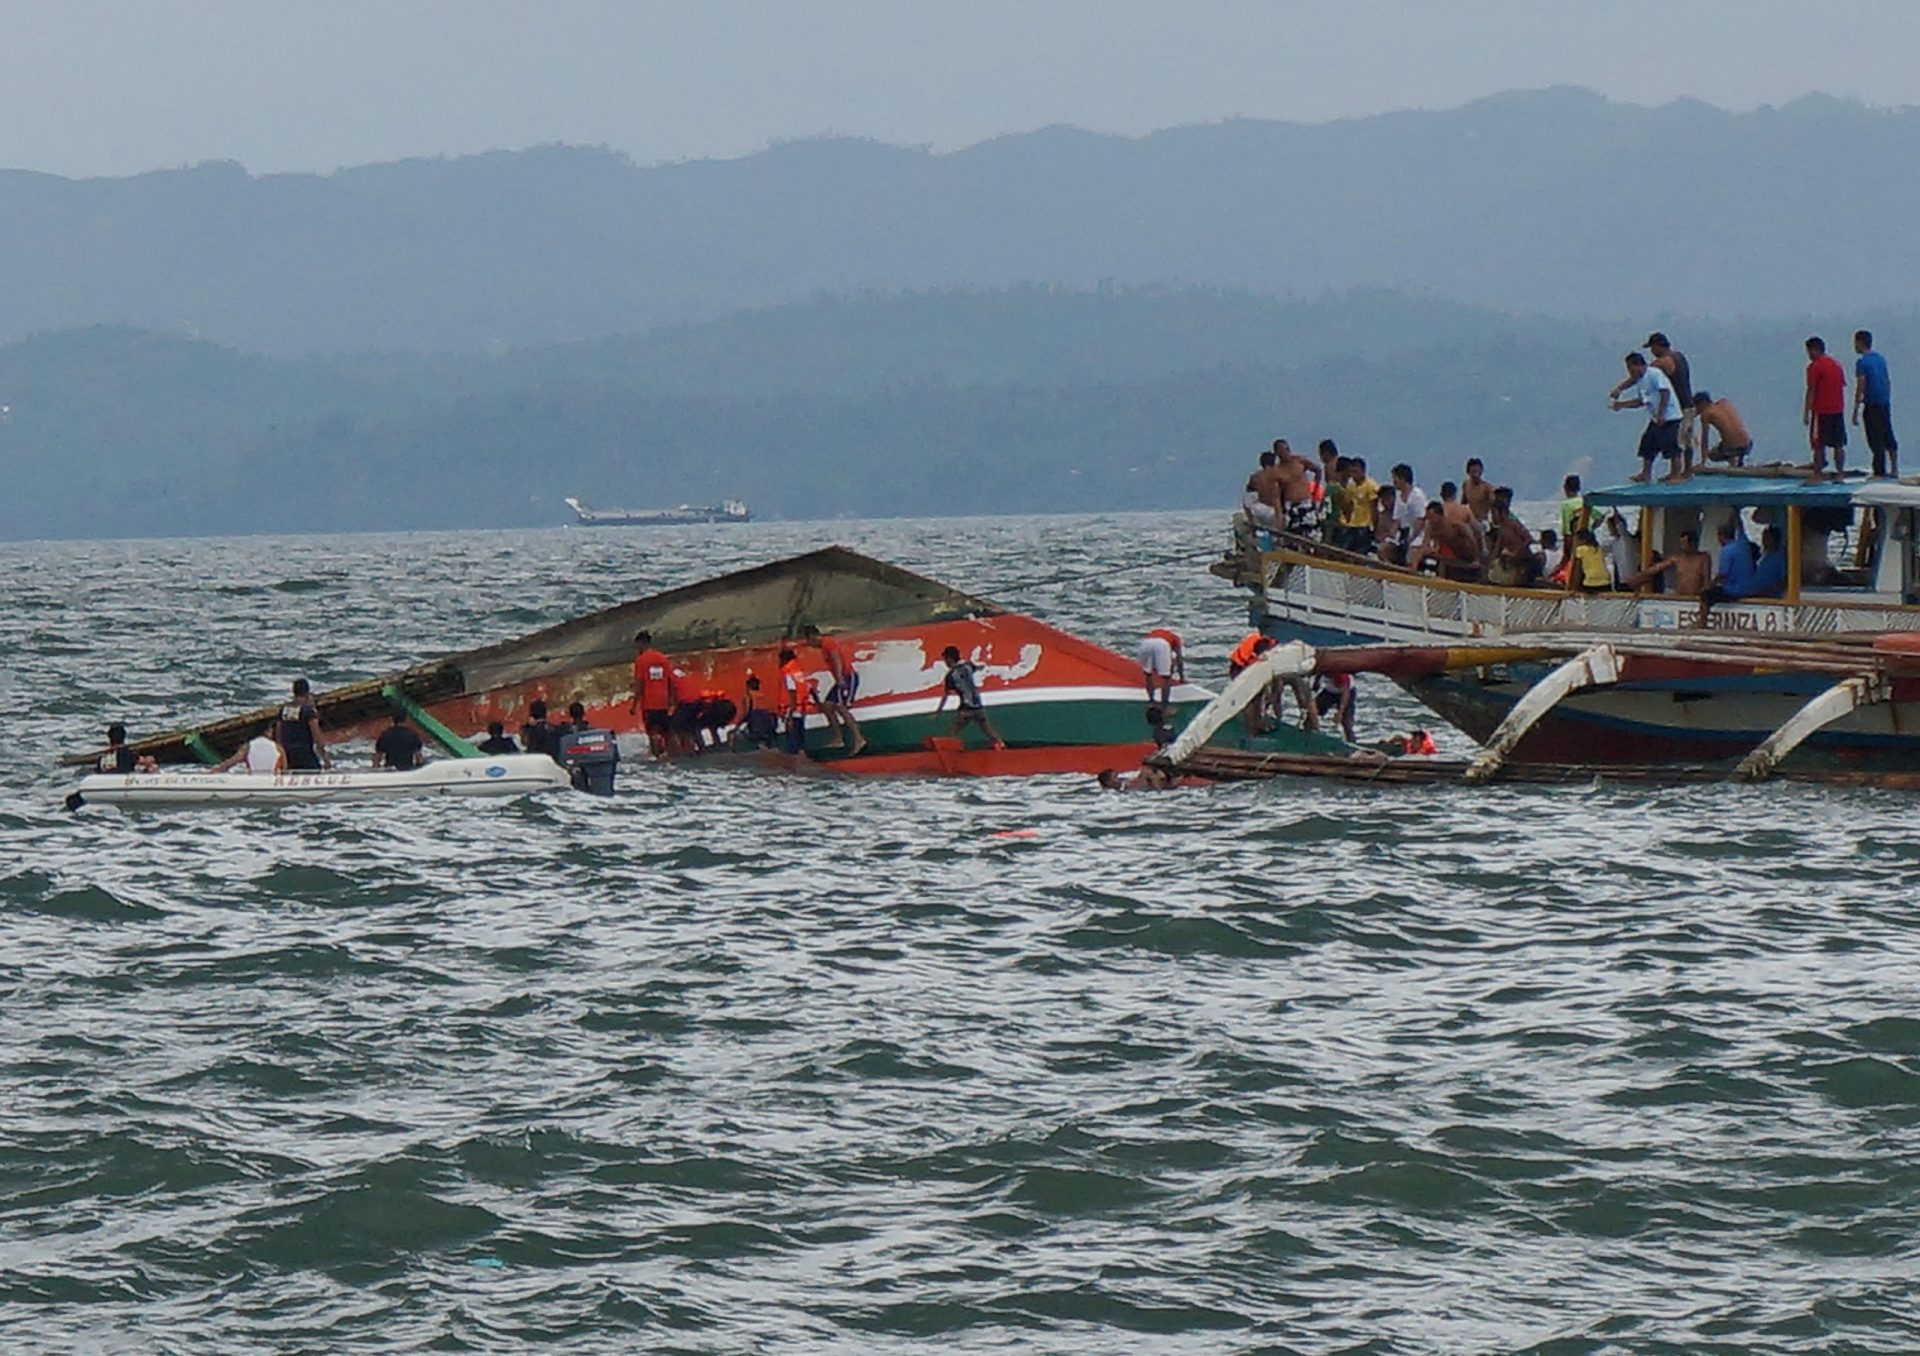 Filipinas: Proprietário e tripulação de navio que afundou acusados de homicídio